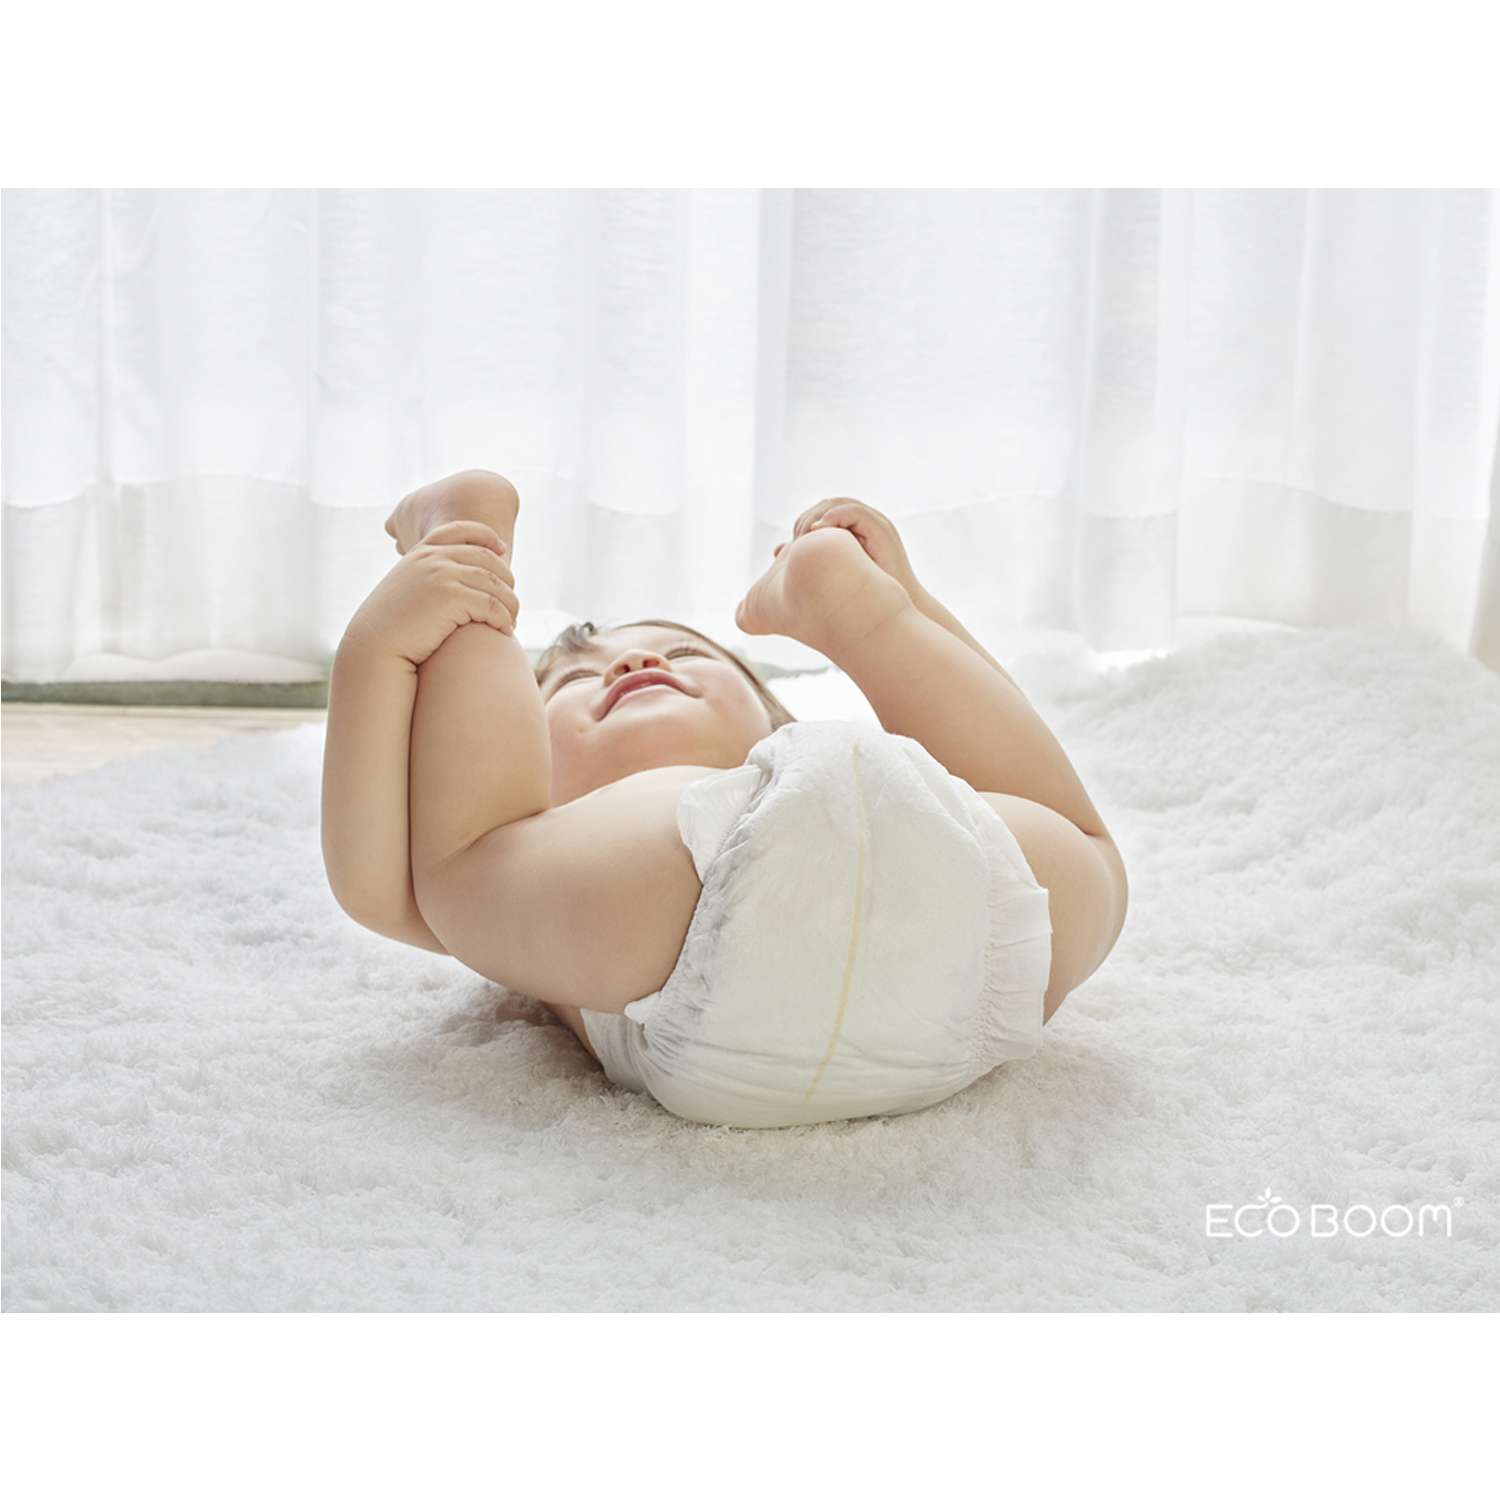 Бамбуковые подгузники детские ECO BOOM размер 2/S для детей весом 3-8 кг 36 шт - фото 7